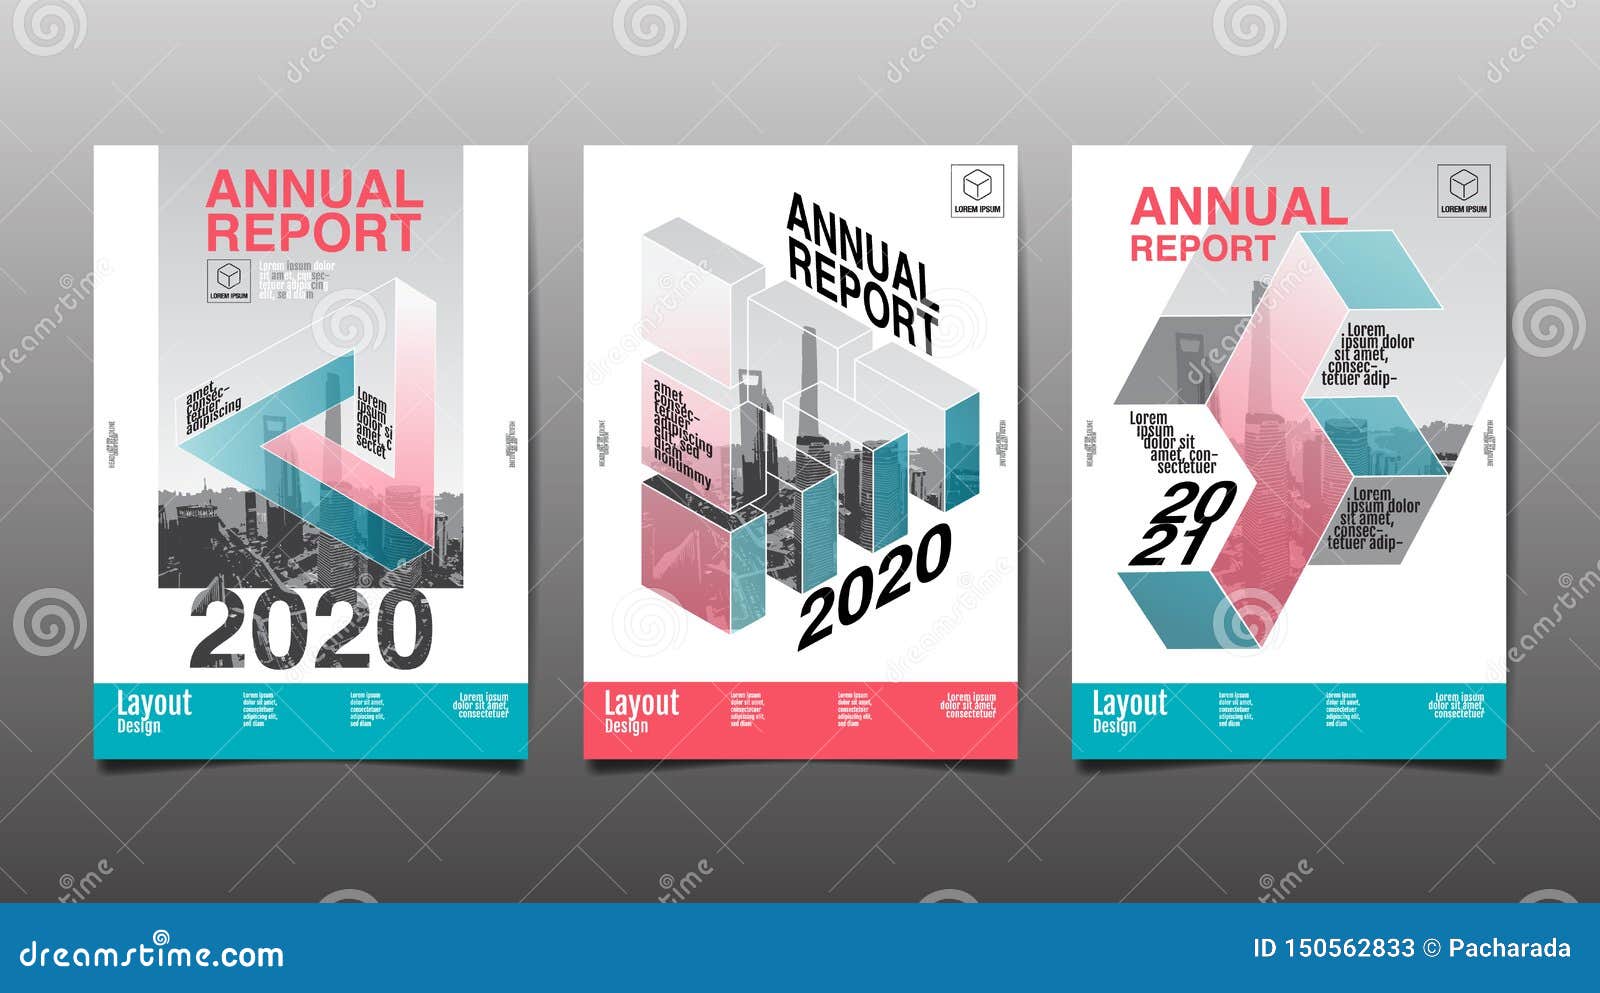 annual report 2021 pdf